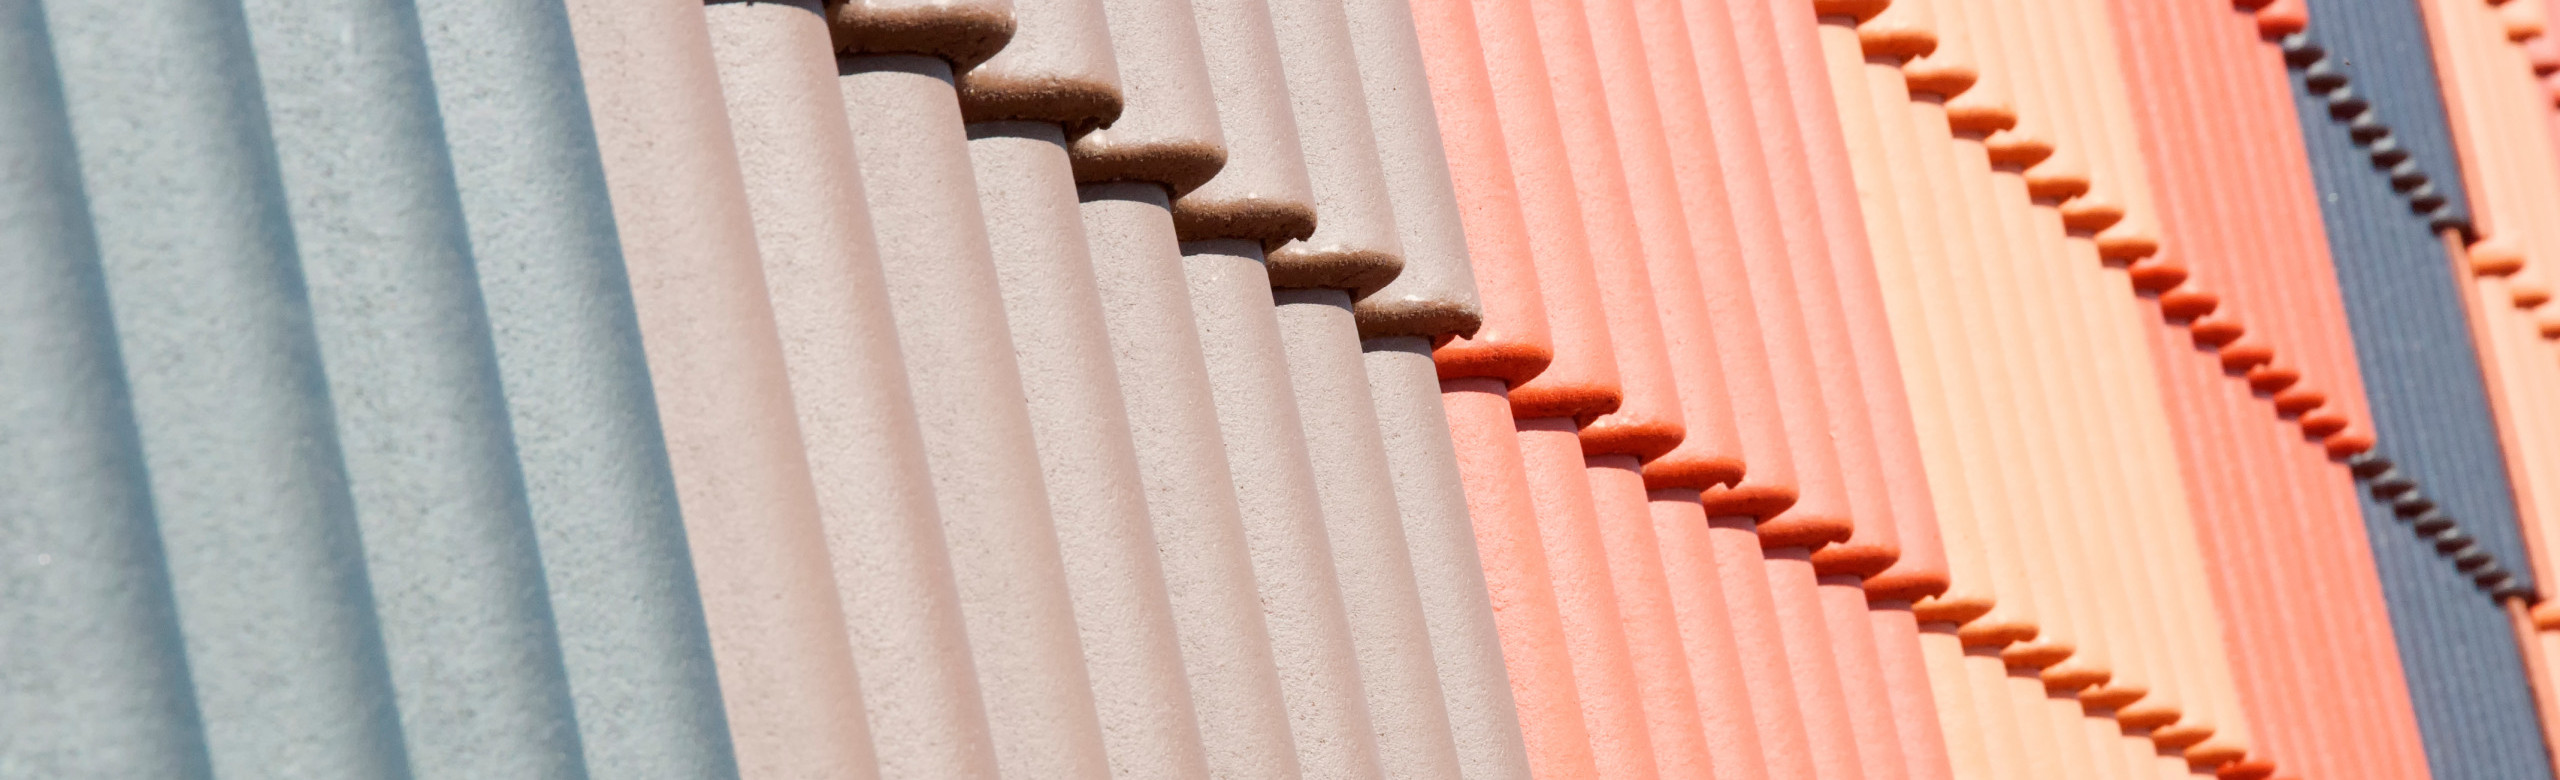 telhas-resistencia-chuva-modelos-diferentes-melhor-cobertura-casa-area-externa-cor-ceramica